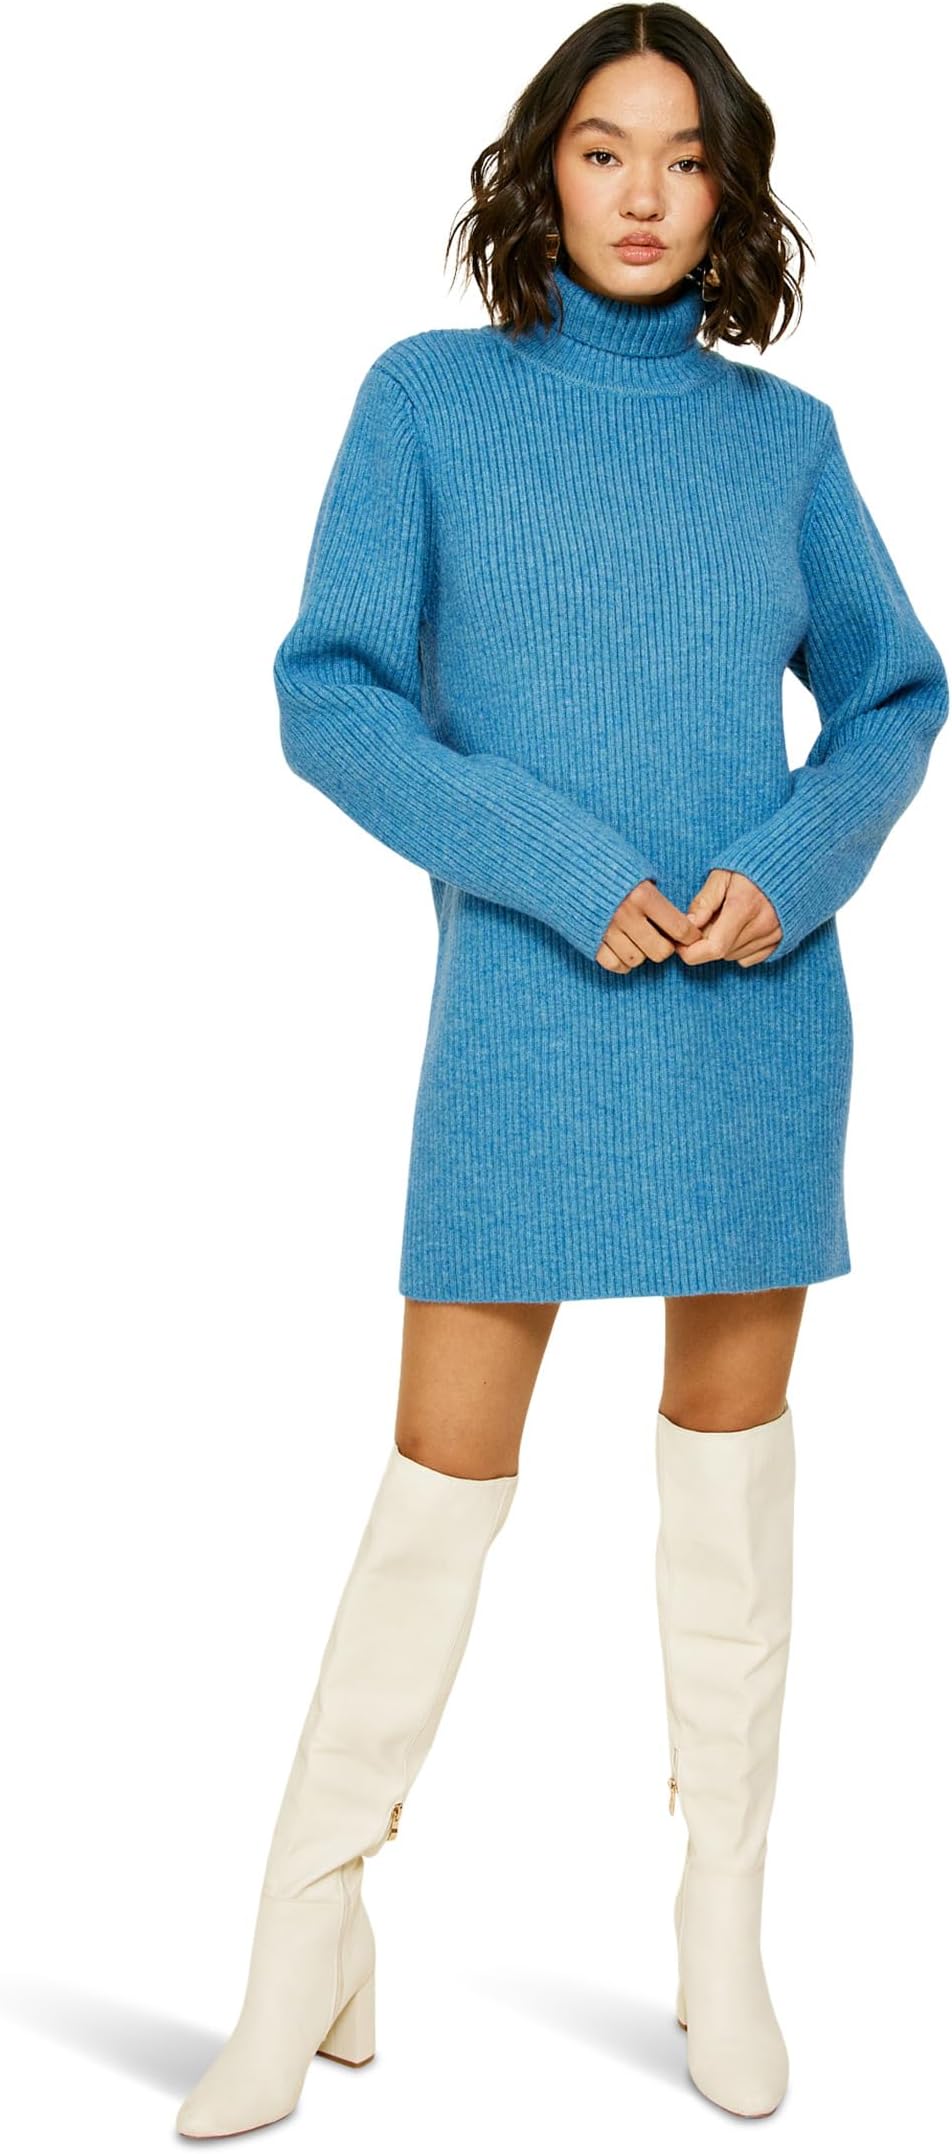 Мини-платье-свитер Barton line and dot, цвет Cobalt Blue платье line and dot barton mini sweaterdress цвет cobalt blue